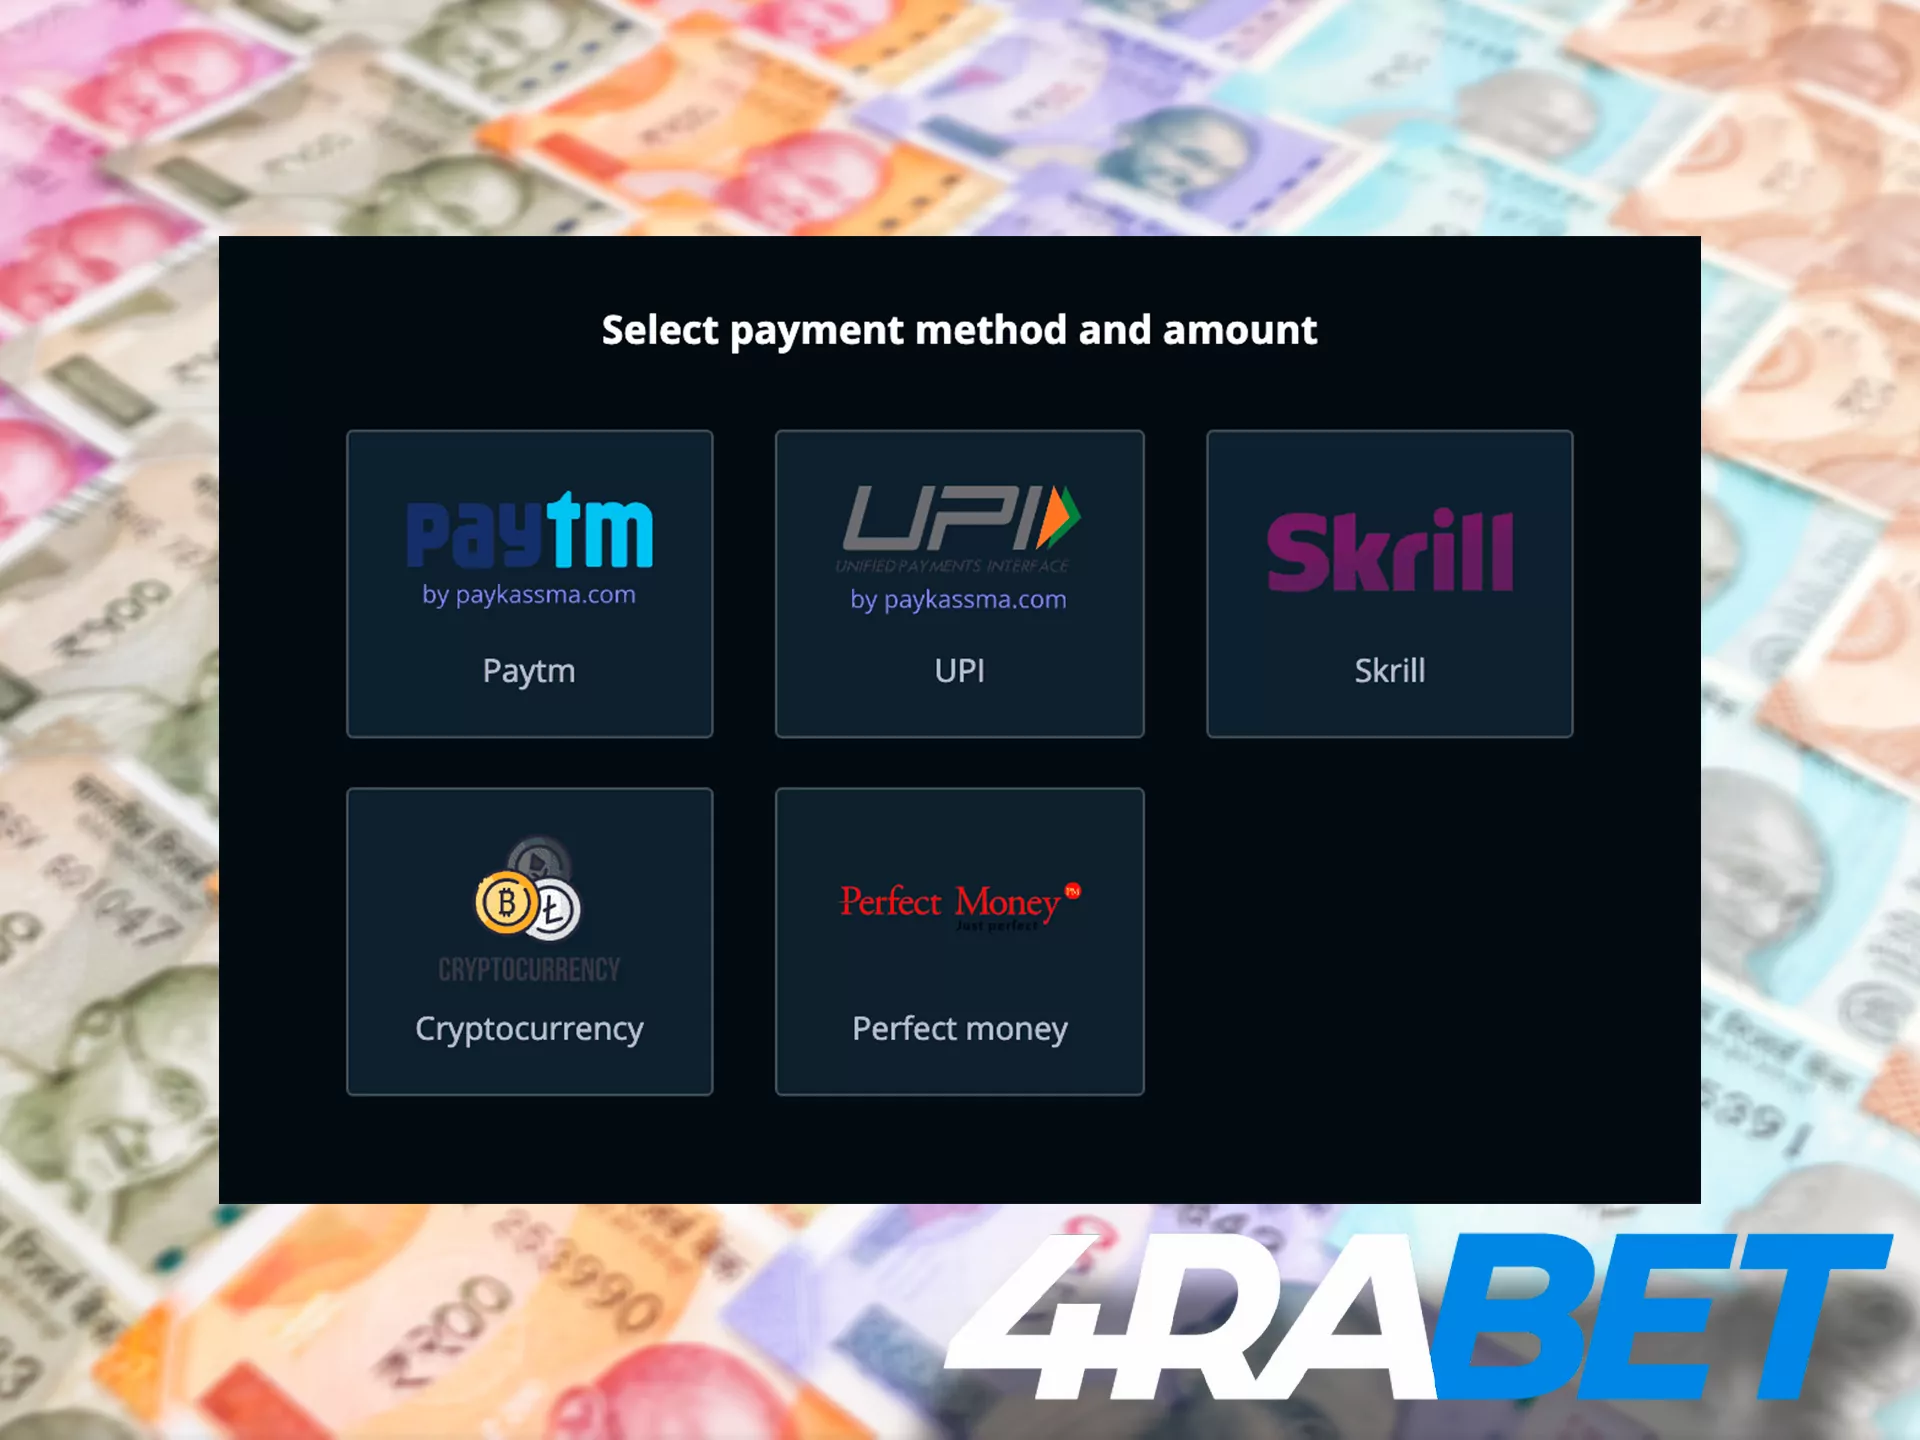 4rabet जमा और निकासी करने के लिए सभी लोकप्रिय भारतीय भुगतान विधियां प्रदान करता है.